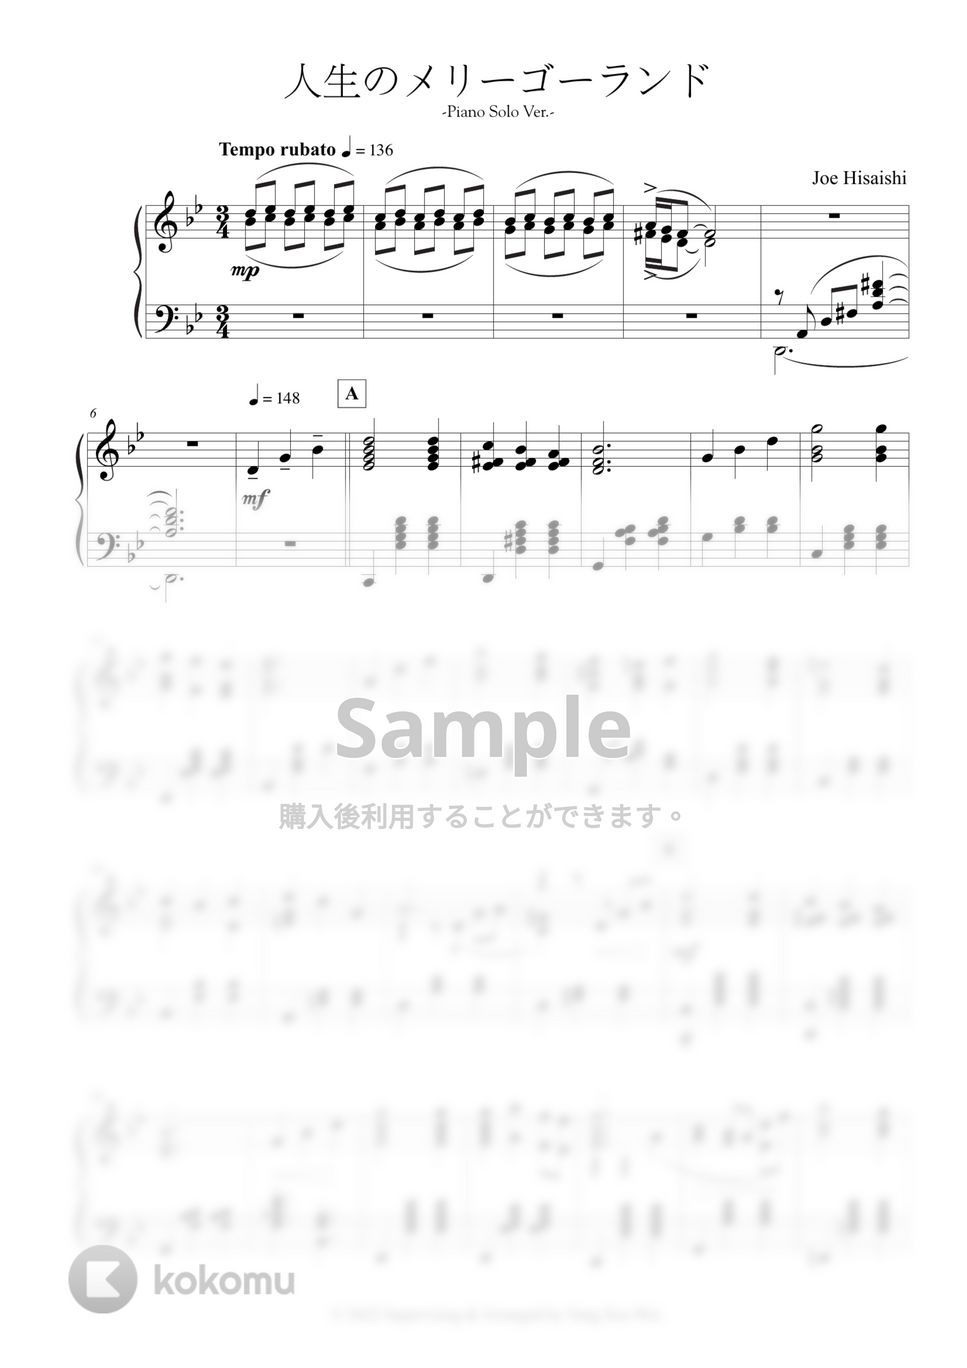 久石譲 - 人生のメリーゴーランド -Piano Solo Ver.- (原典版) by 楊思緯